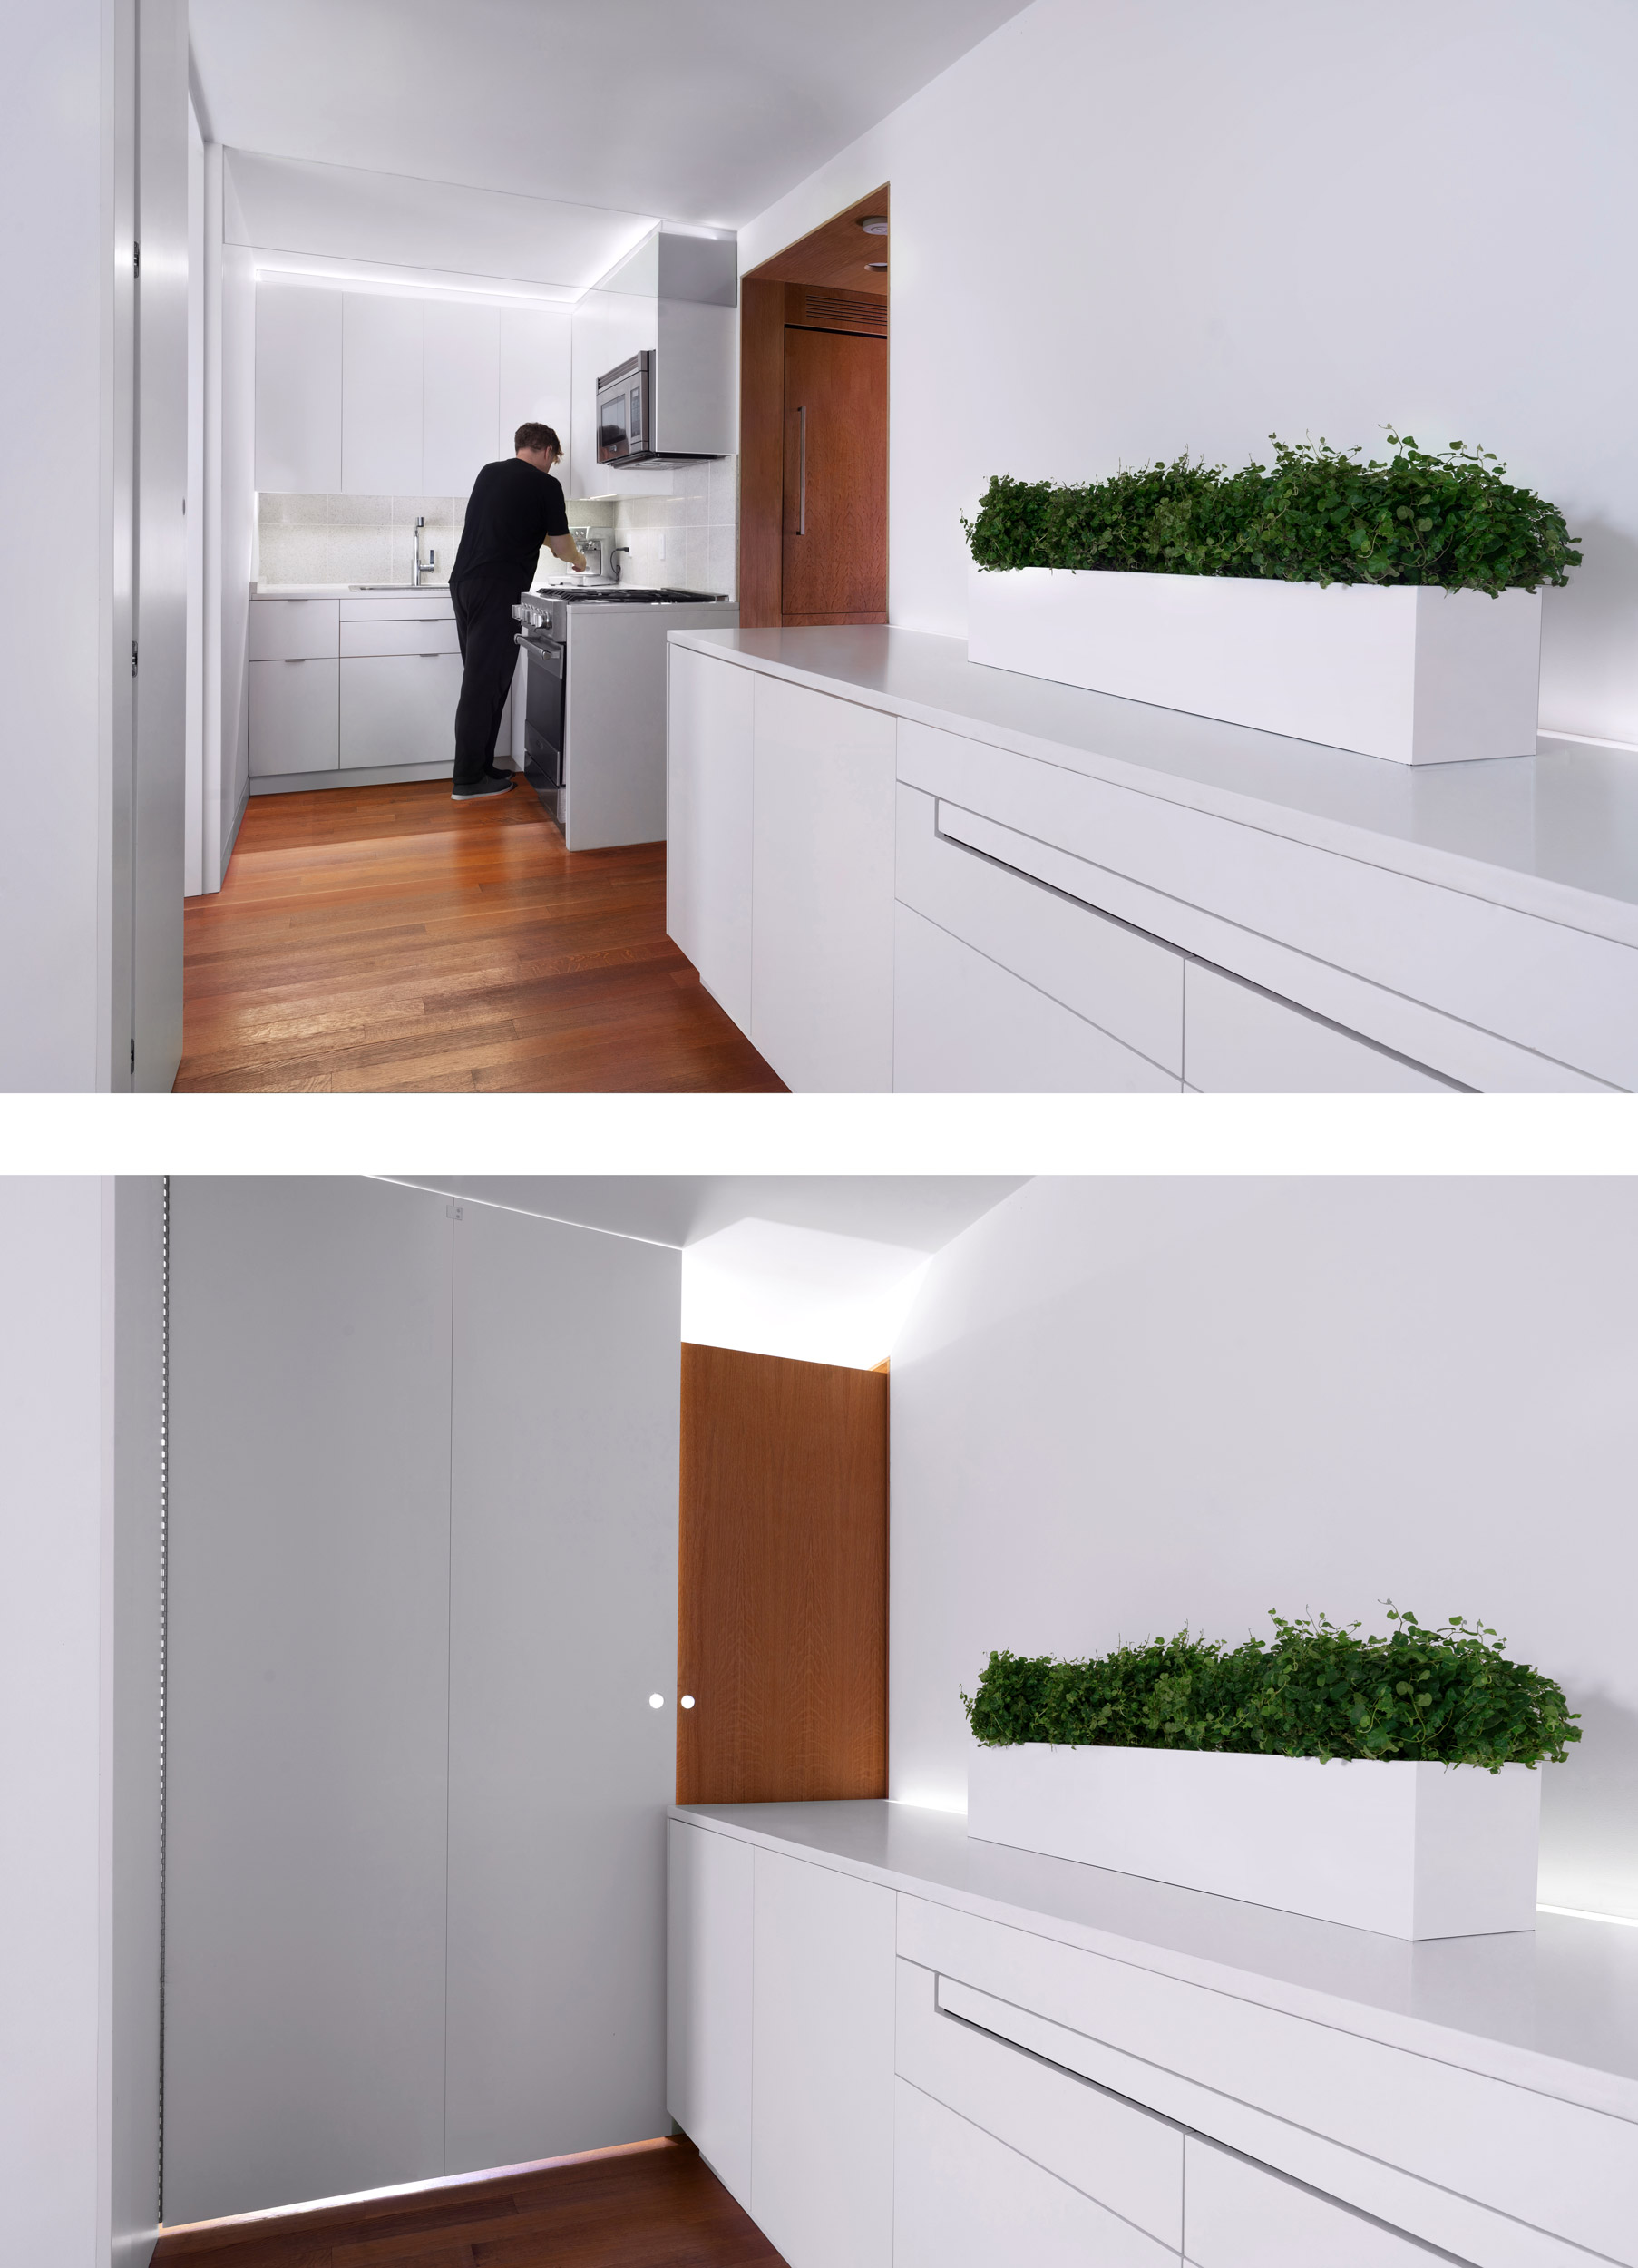 Interiors Merit Award: Hopp Apartment by Martin Hopp Architect, in New York, NY. Photo: Fei Liu.